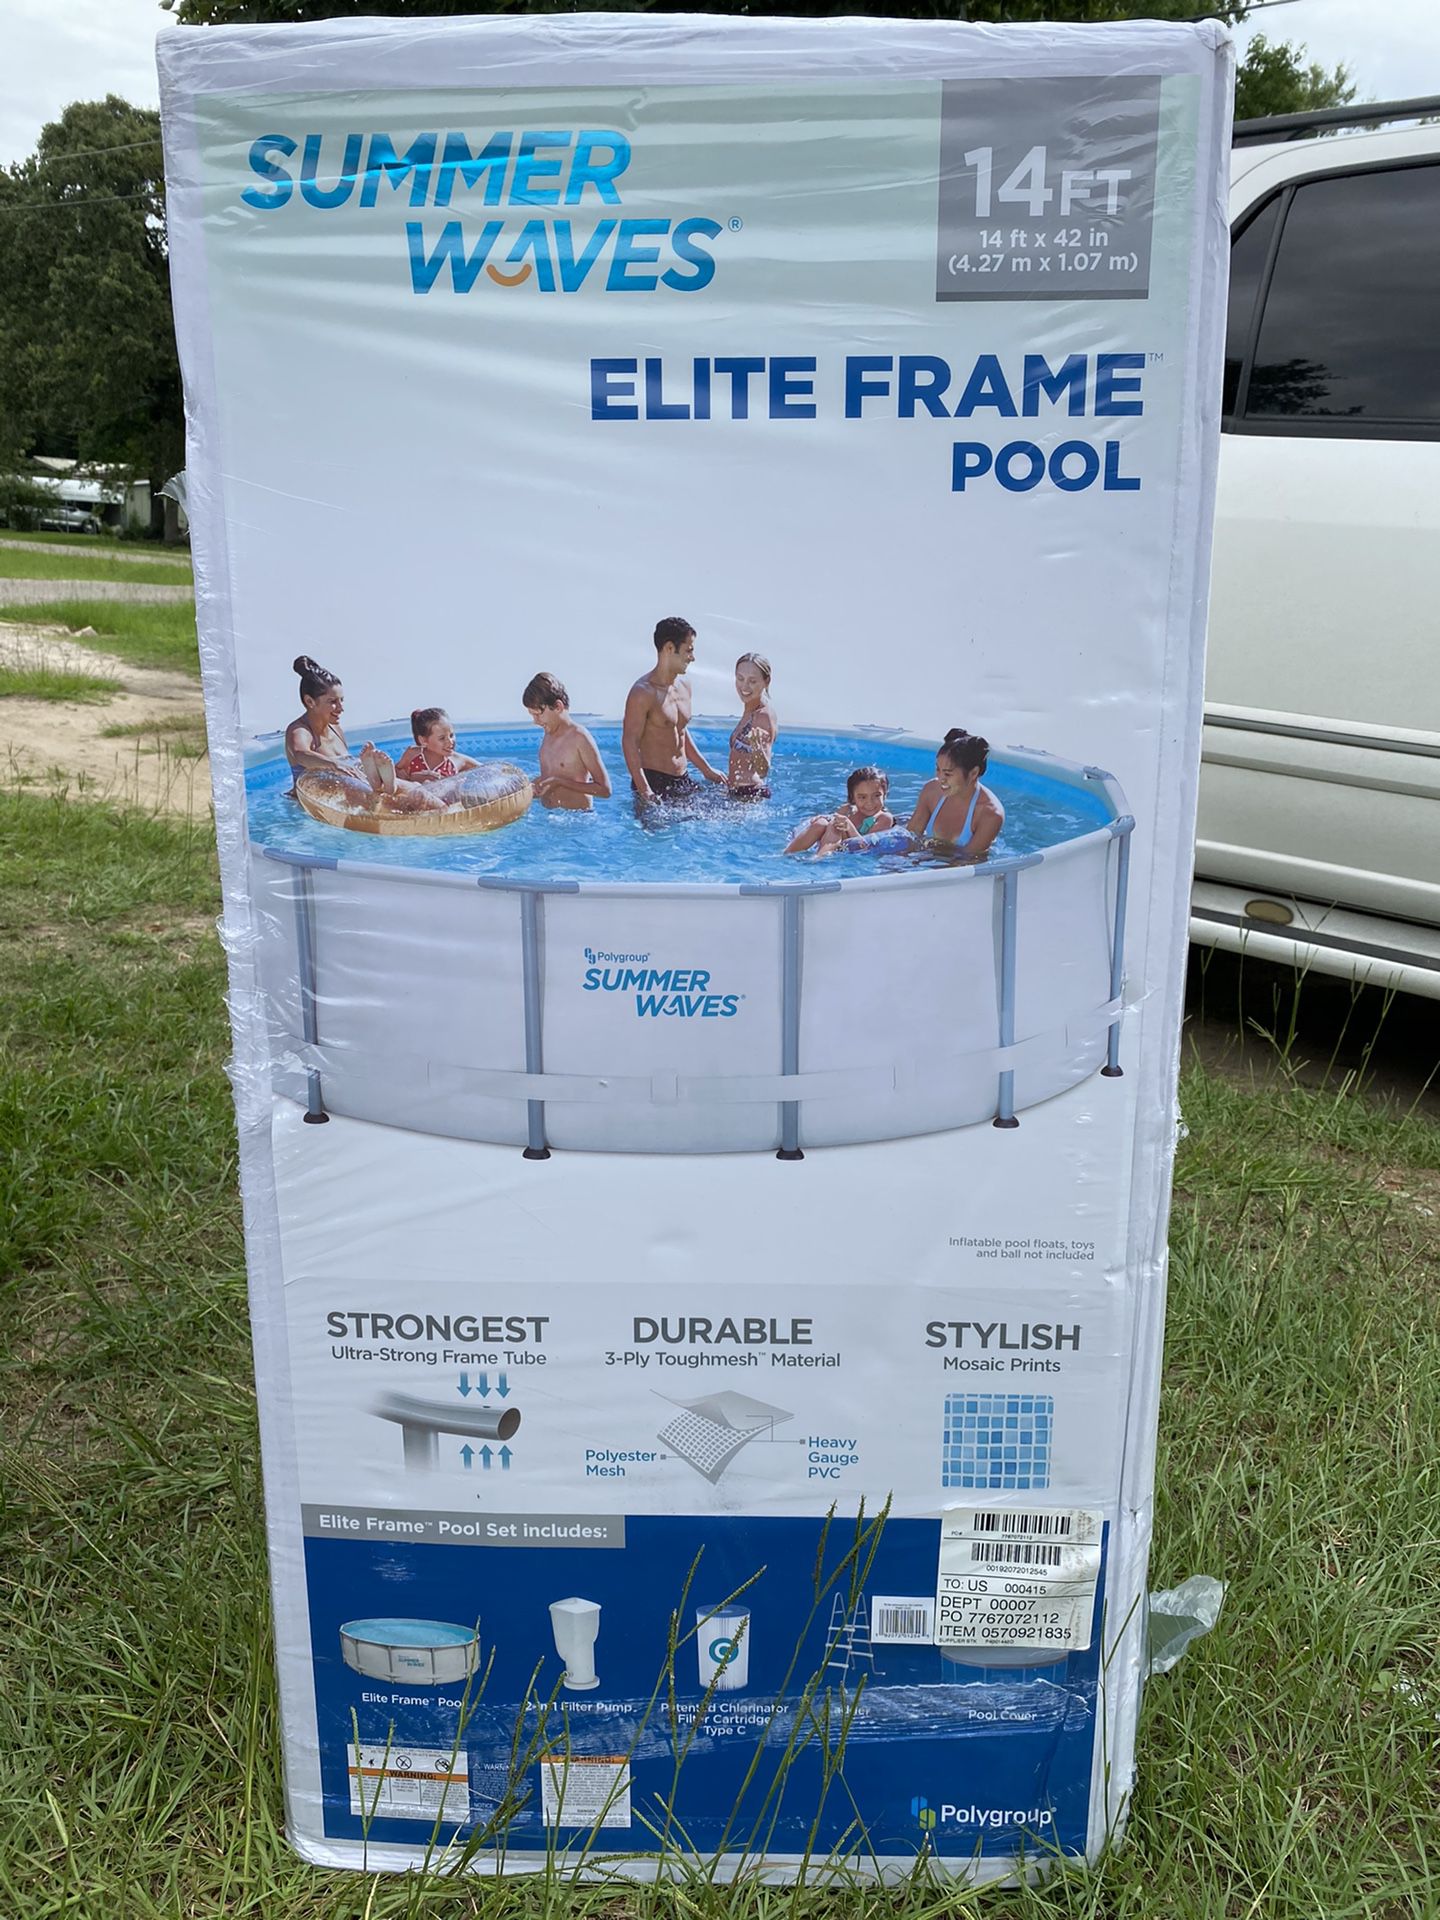 Summer waves 14x42 in Elite frame pool